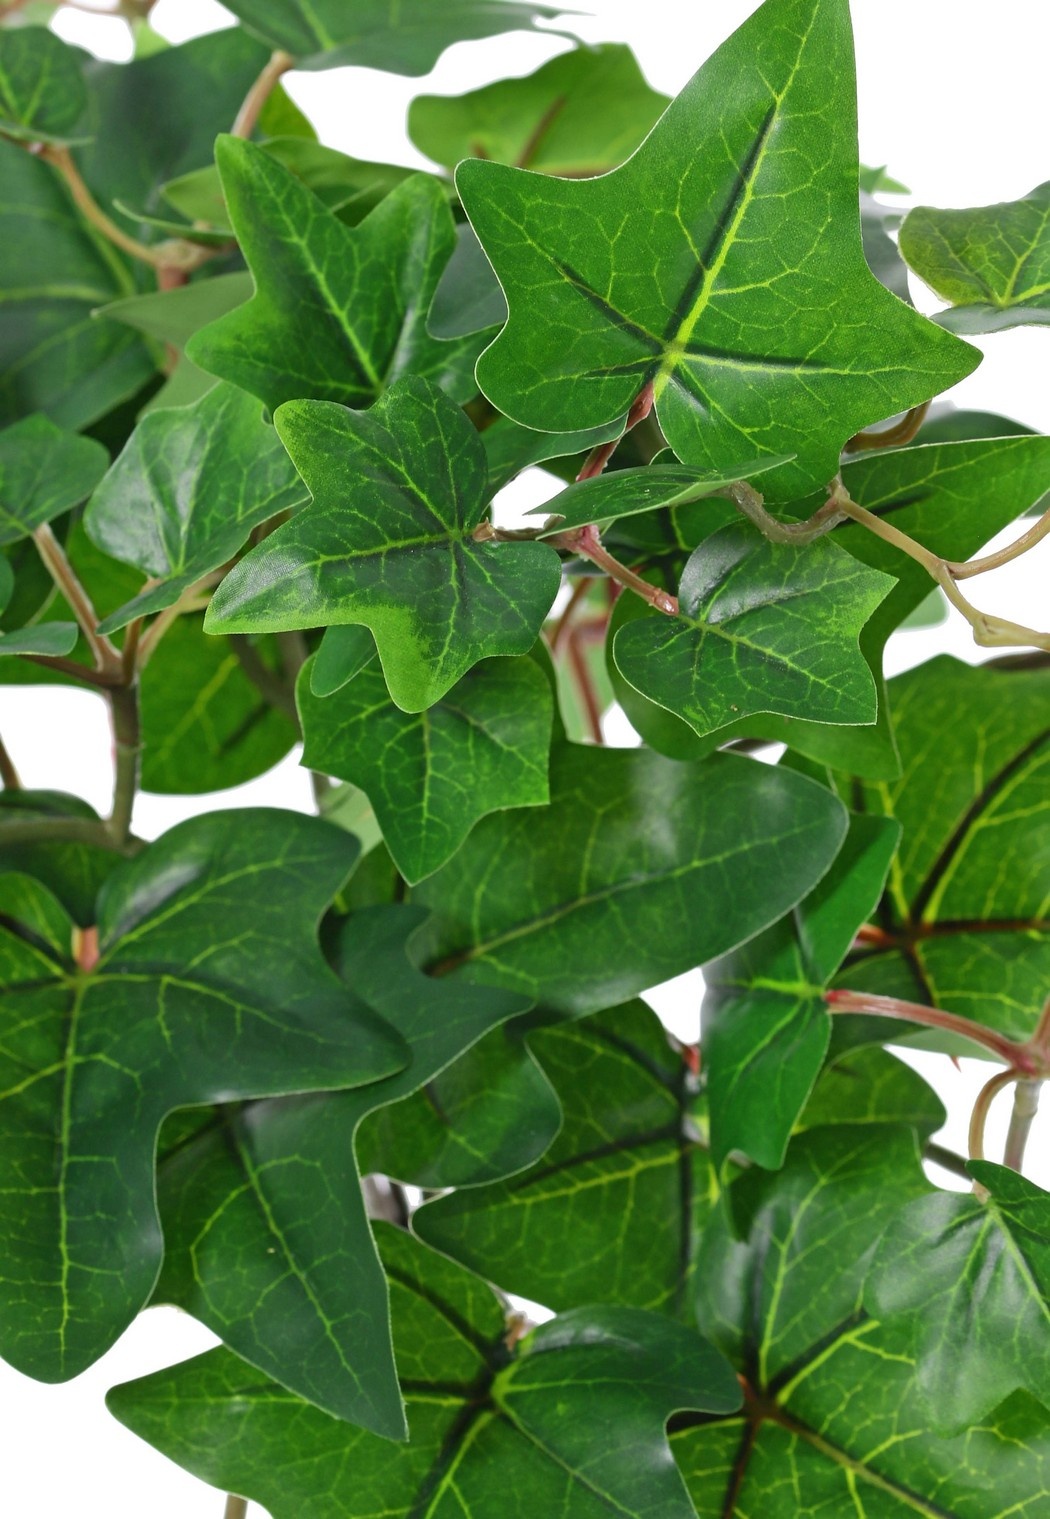 Planta de hiedra (Hedera) 'grande', 10 x ramas con 10 brotes y 38 hojas, 55 cm, RECICLADA